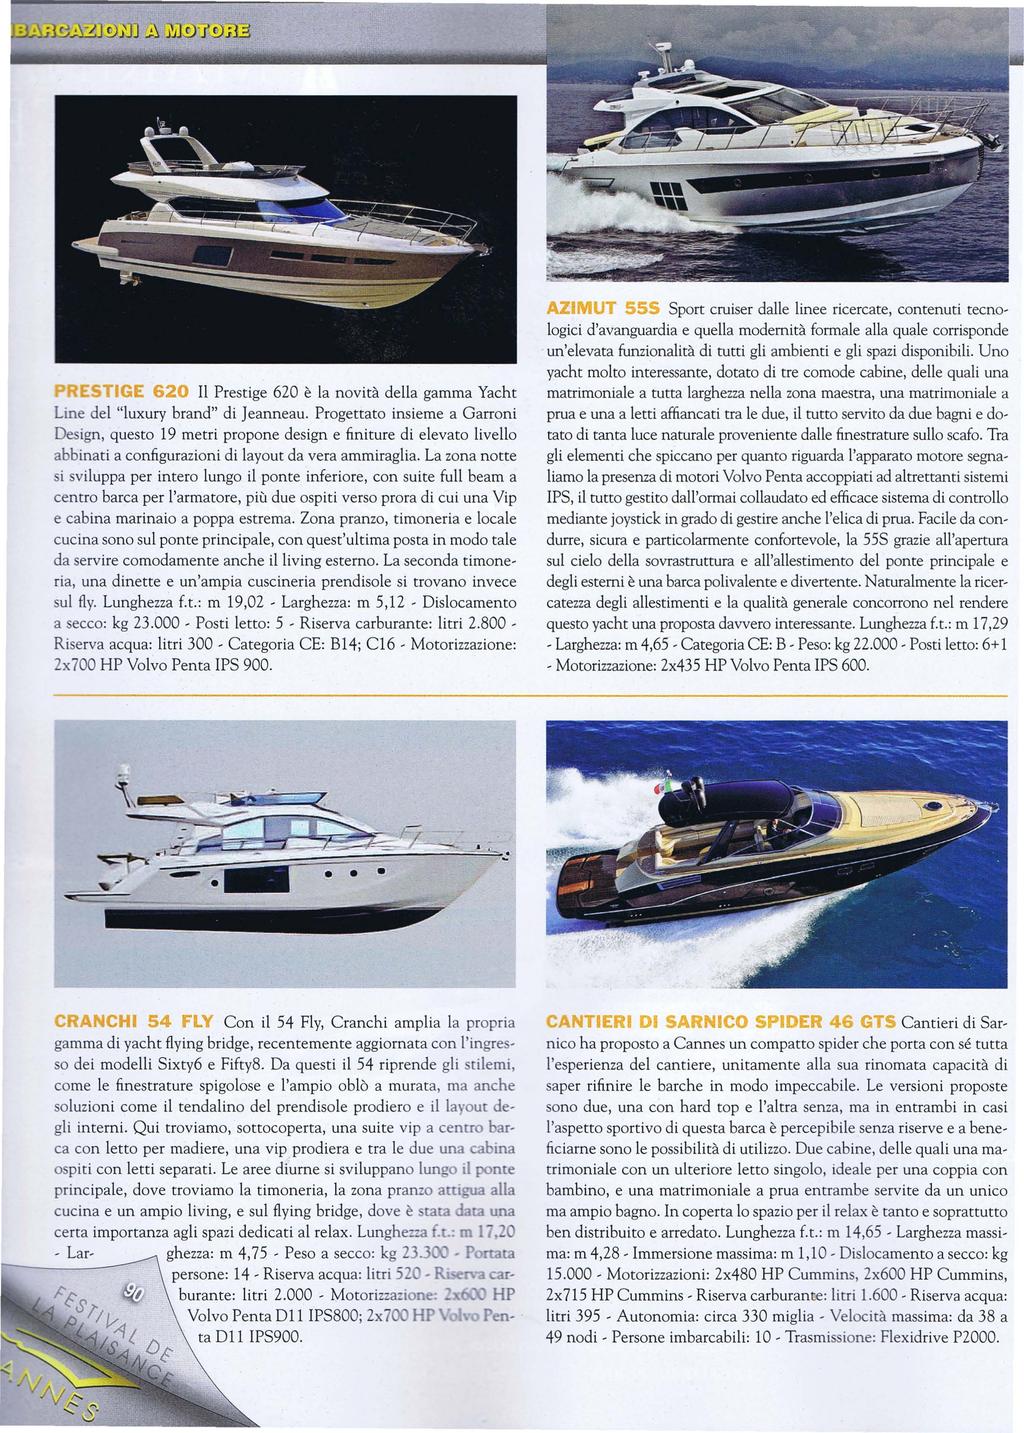 TIGE 620 Il Prestige 620 è la novità della gamma Yacht Une del "luxury brand" di ]eanneau.